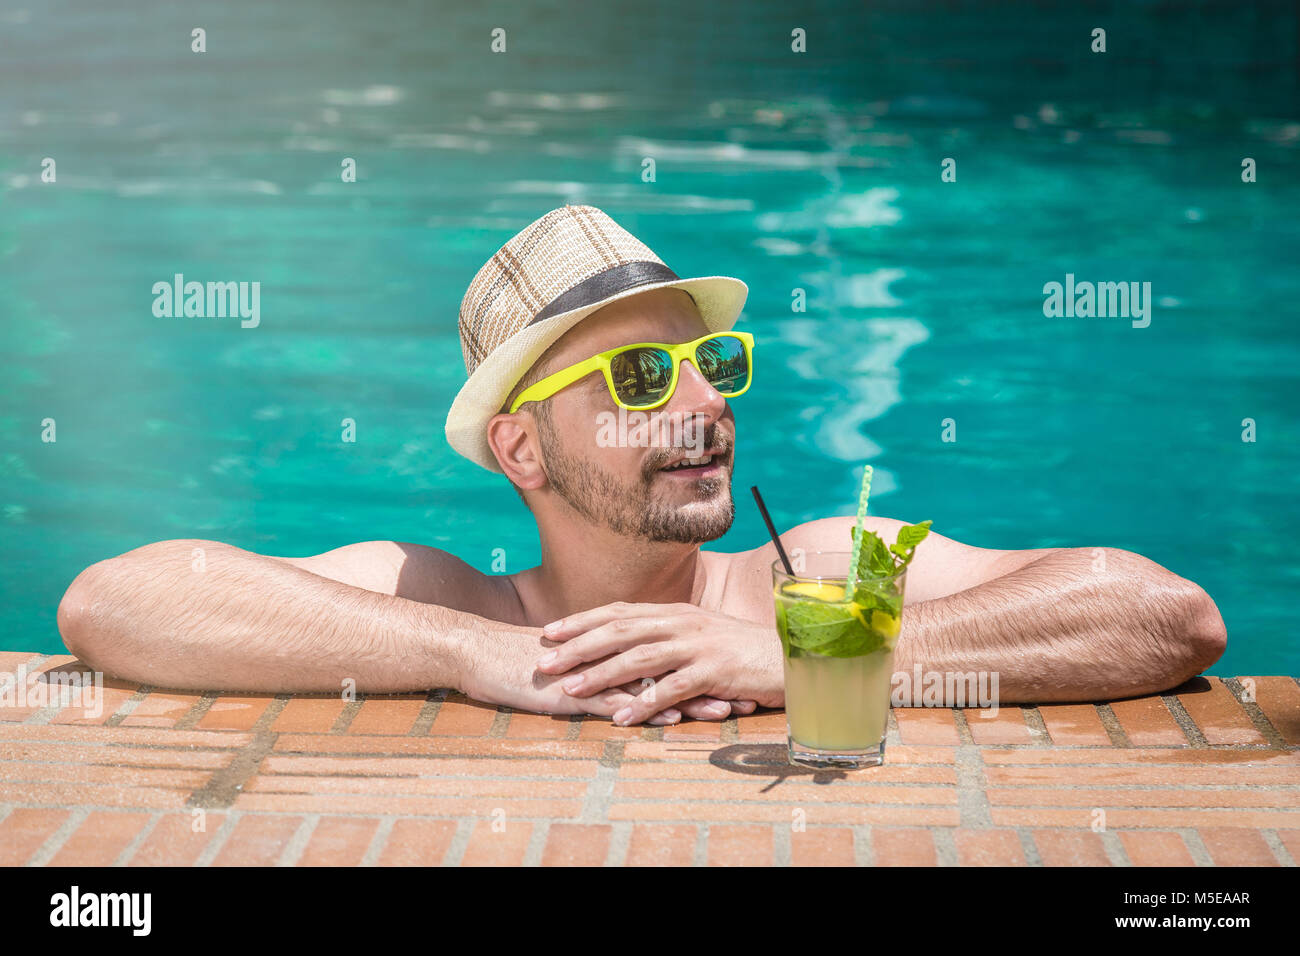 el hombre con gafas de sol negras está en la piscina en sus